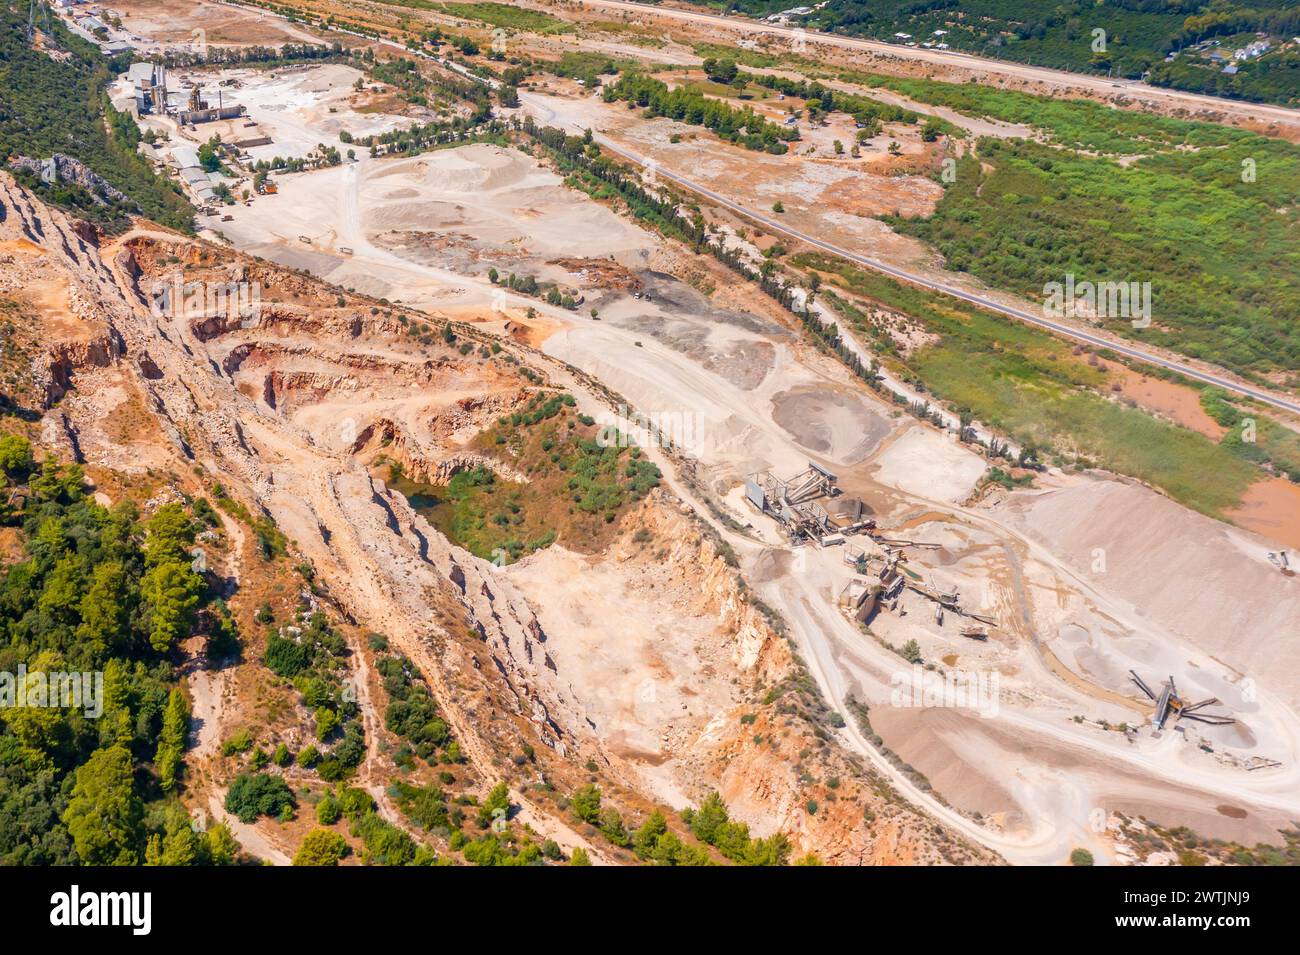 Vista aerea della cava mineraria a cielo aperto con molti macchinari in funzione vista sopra. L'area è stata estratta per rame, argento, oro e altri minerali. Foto Stock